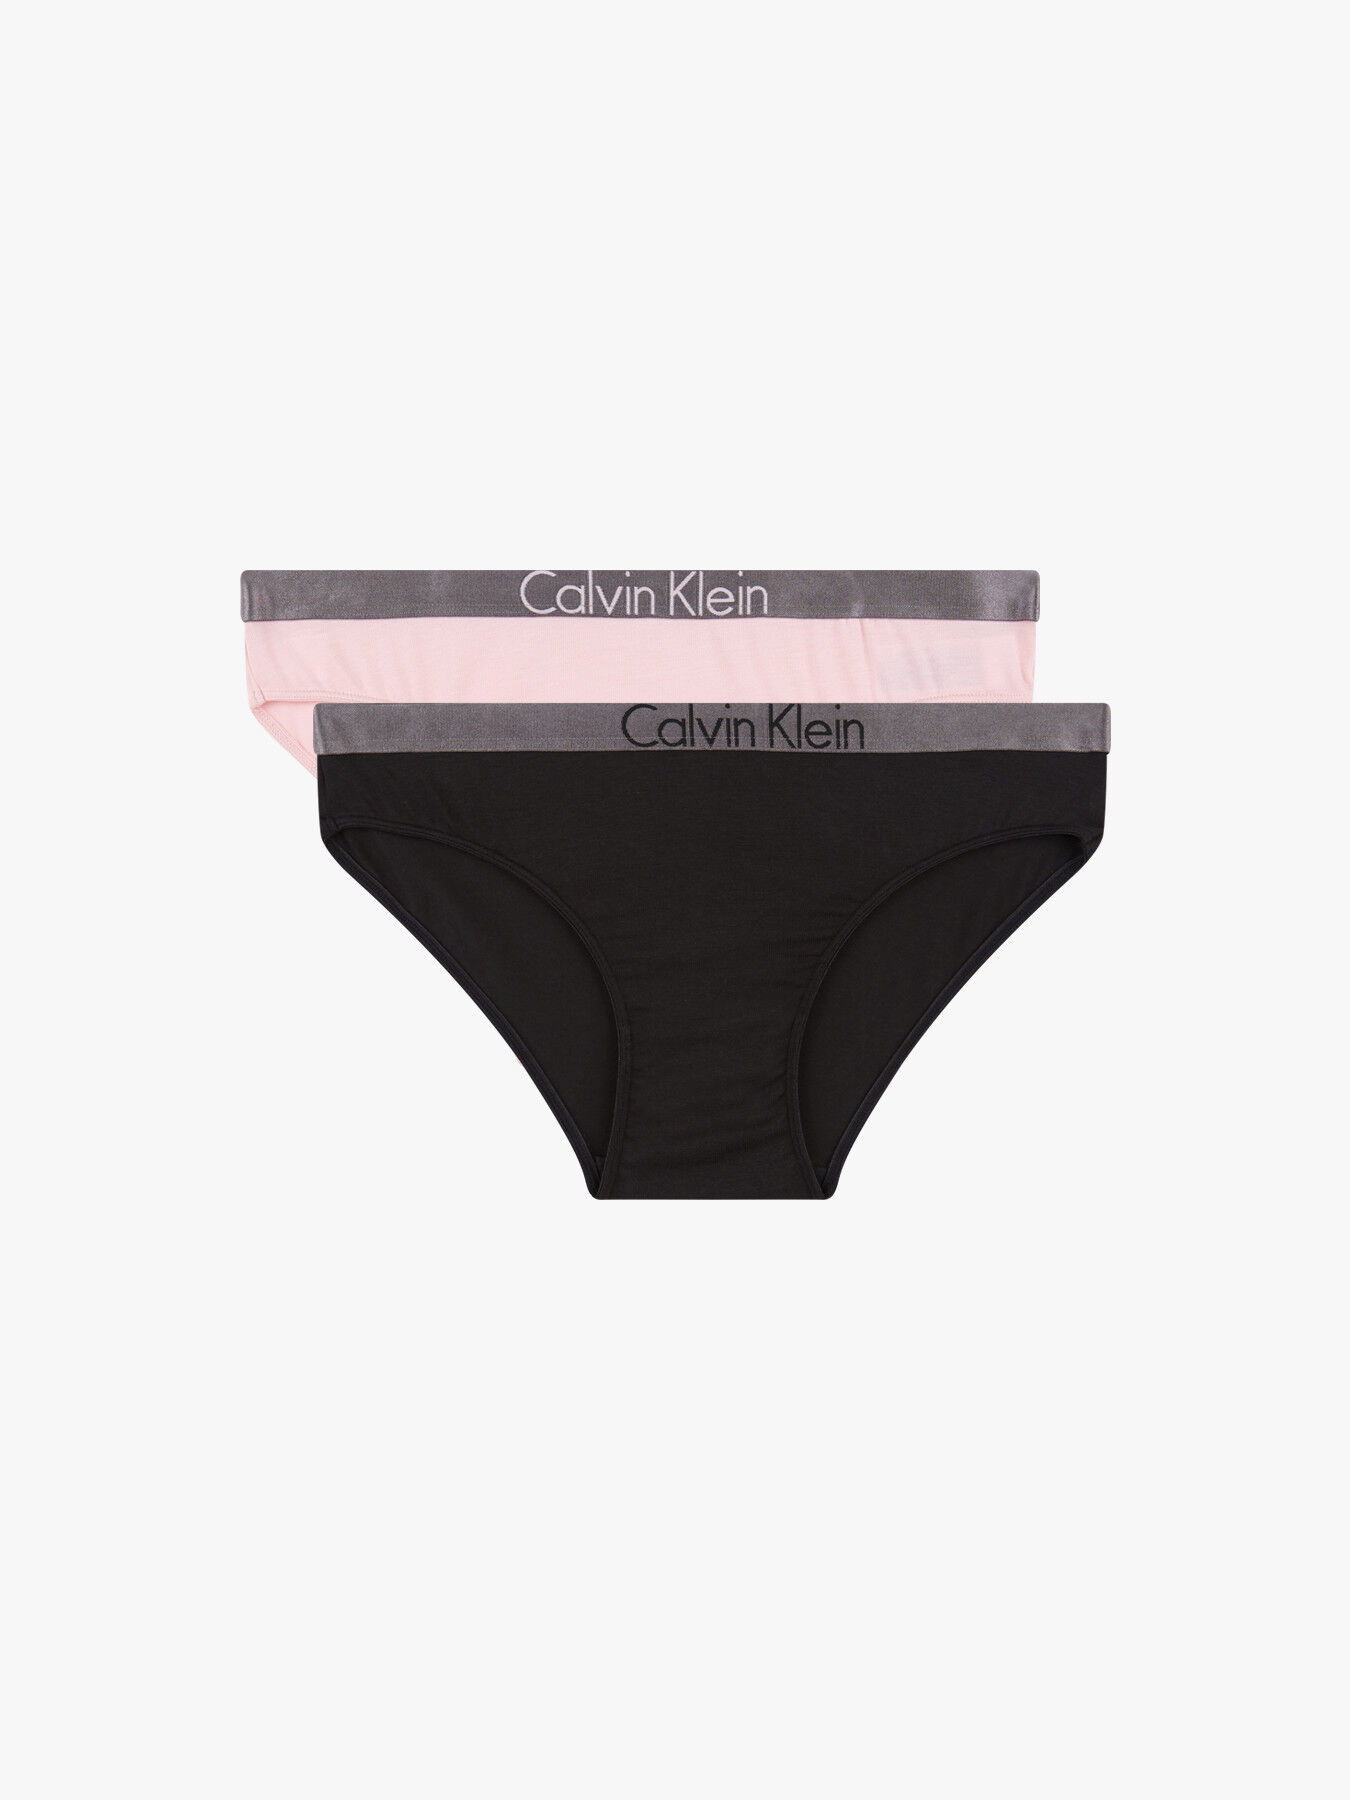 Calvin Klein Kids' Modern Cotton Blend Bikini Brief, Pack of 2